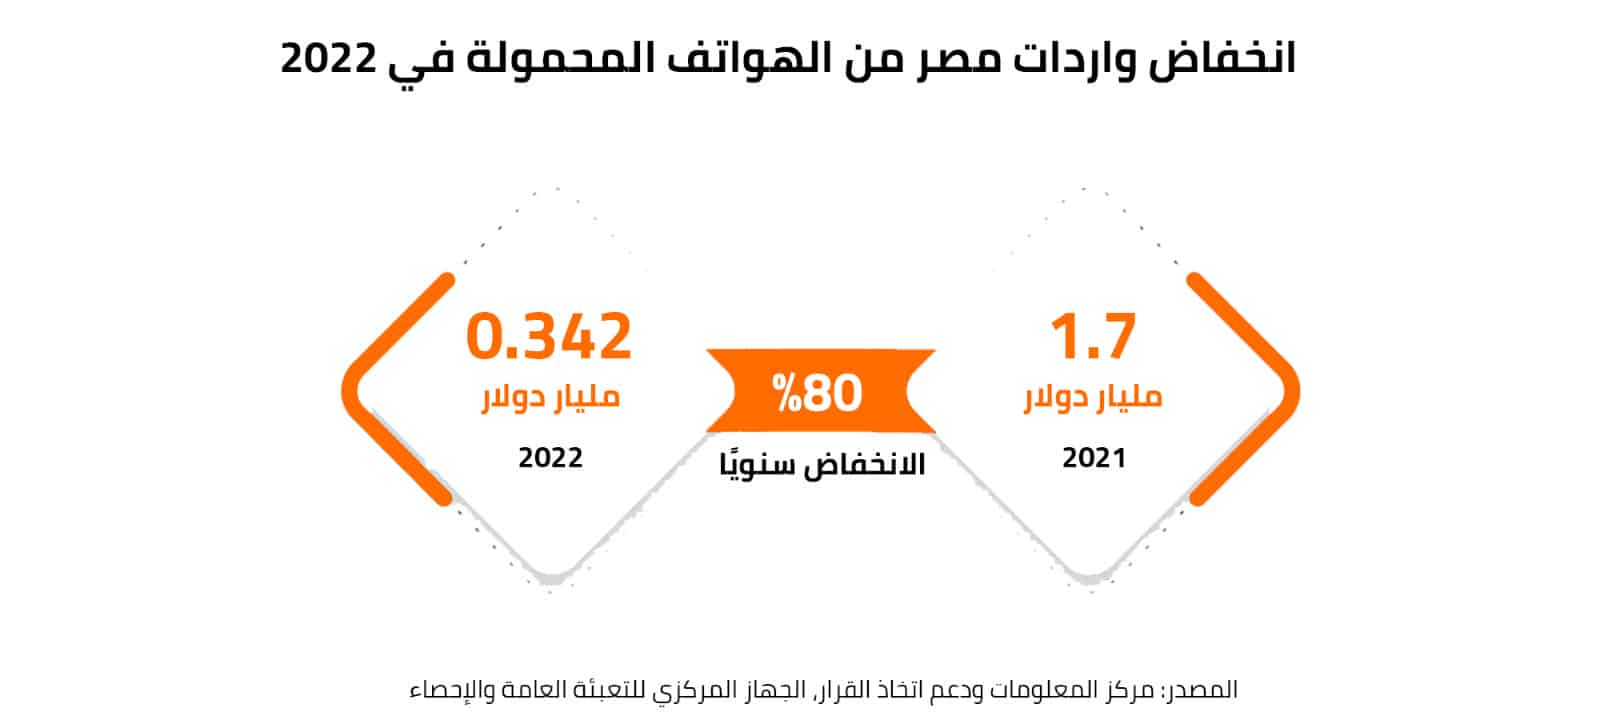 انخفاض واردات مصر من الهواتف المحمولة في 2022 